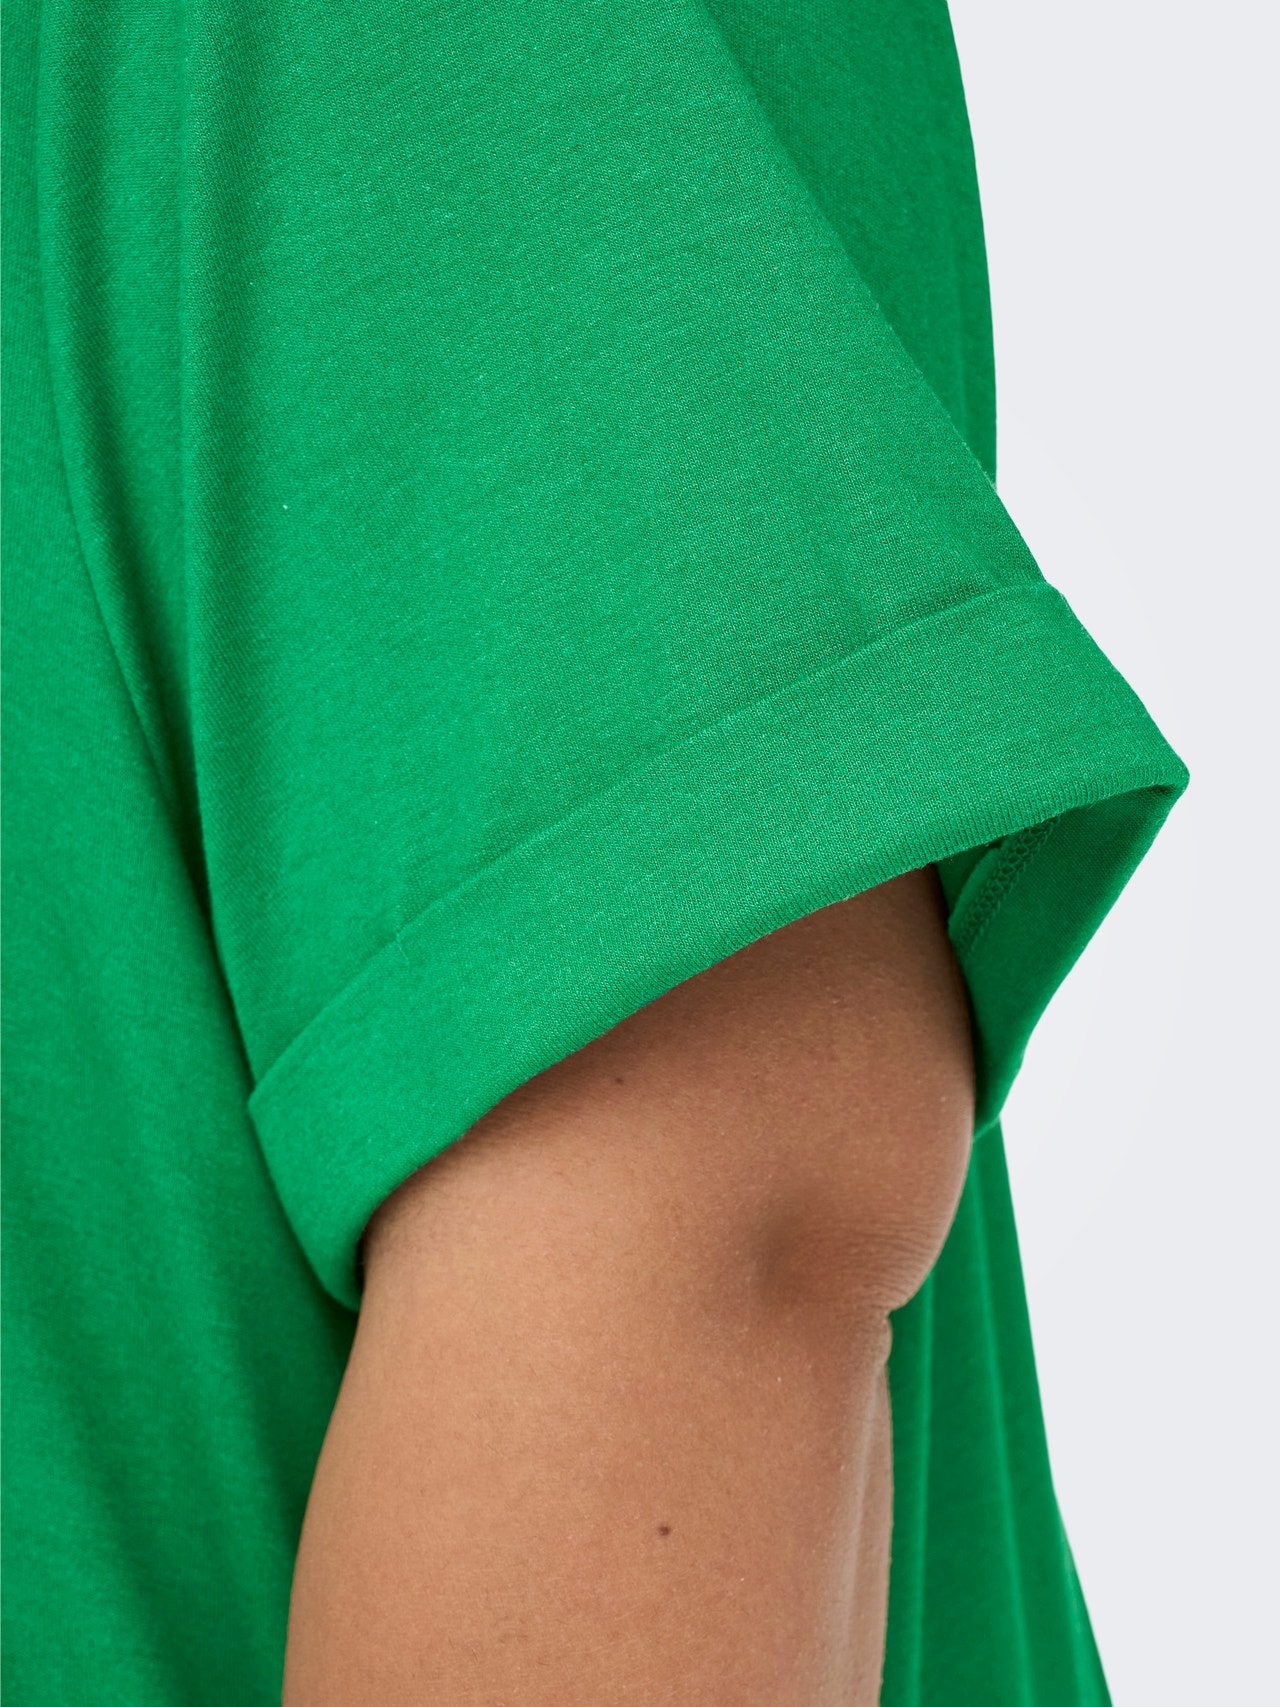 ONLY Curvy effen gekleurd T-shirt -Jolly Green - 15238147